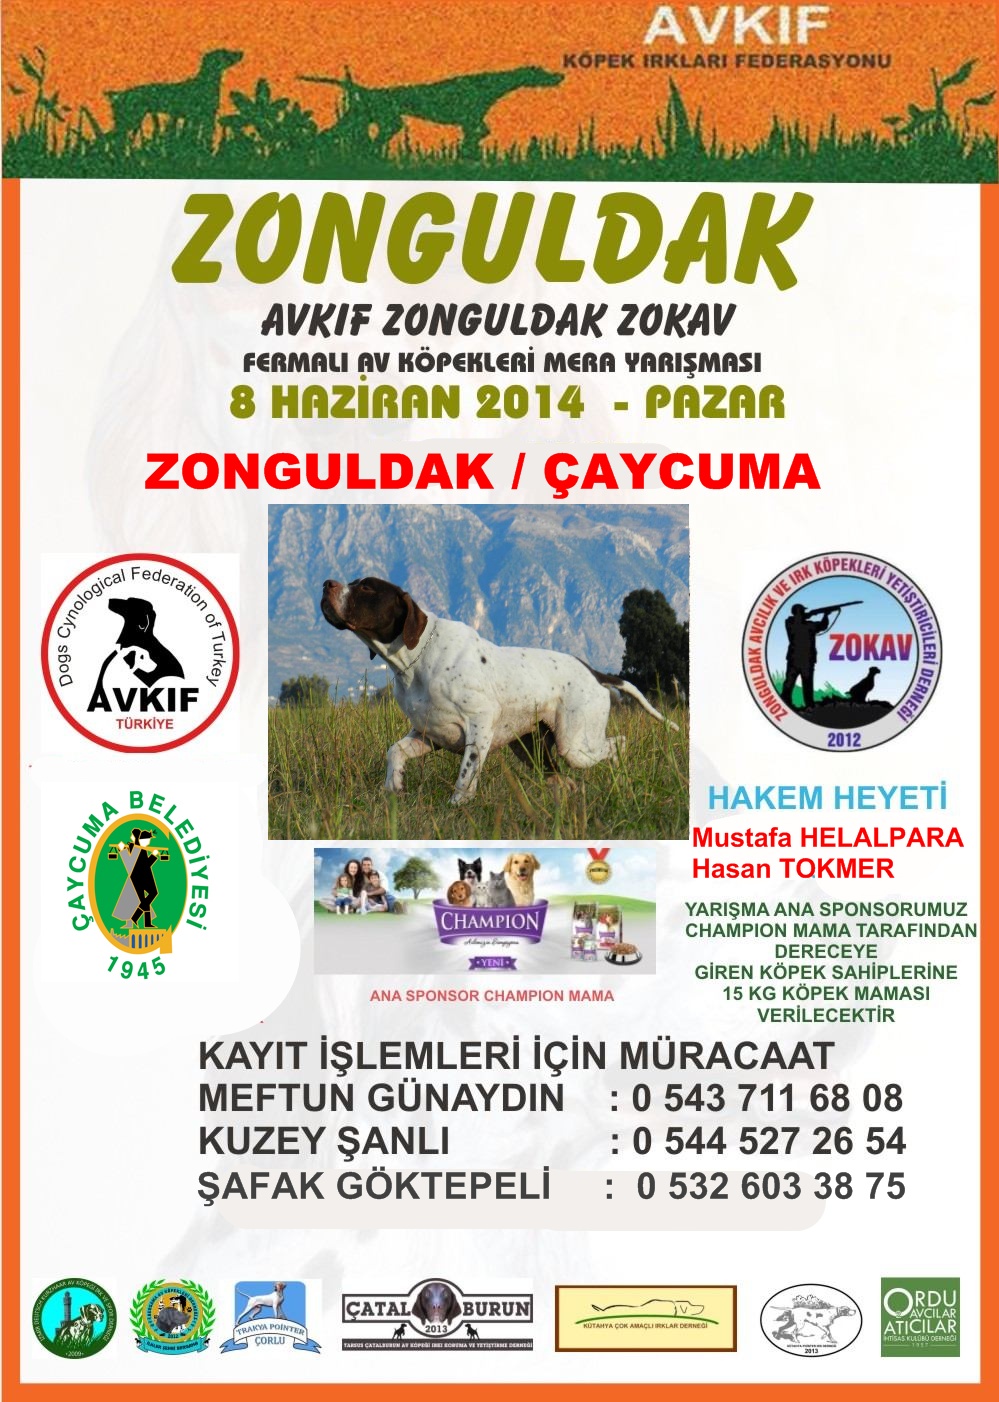 AVKIF Zonguldak Fermalı Av Köpekleri Mera Yarışması Ertelendi